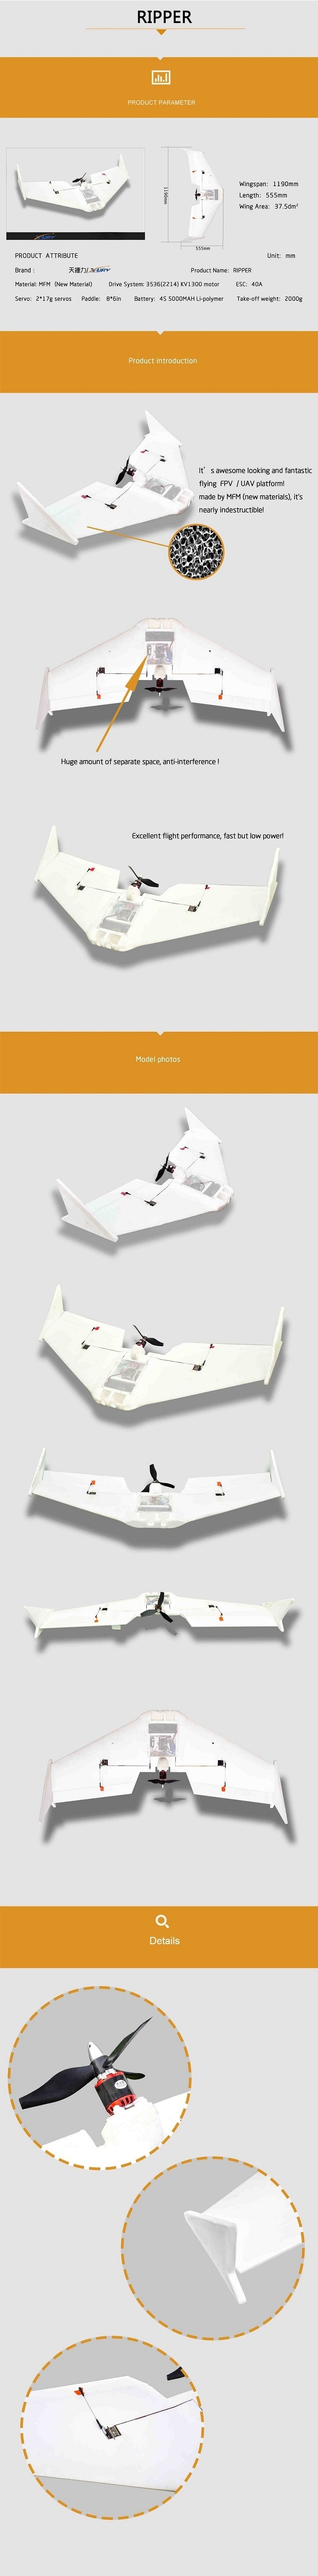 X-uav Ripper 1190mm Wingspan MFM FPV RC Plane Aircraft Kit